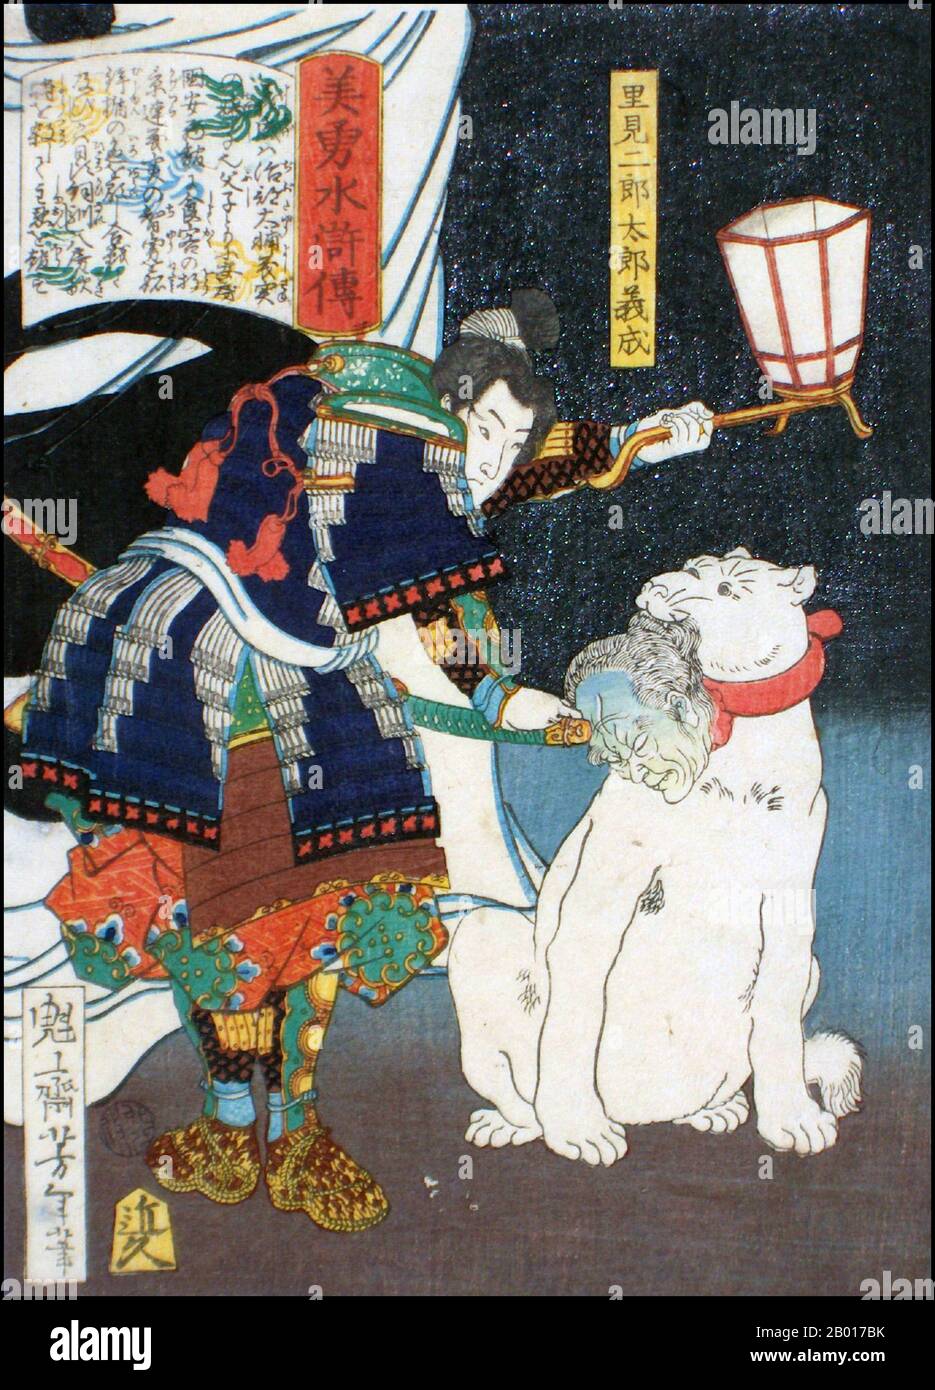 Giappone: 'atami Jirotaro Yoshishige prende la testa di Awa Katsegura dal suo cane'. Ukiyo-e stampa di blocchi di legno dalla serie 'Heroes of the Water Margin' di Tsukioka Yoshitoshi (1839 - 9 giugno 1892), 1867. Tsukioka Yoshitoshi, anche chiamato Taiso Yoshitoshi, era un artista giapponese. È ampiamente riconosciuto come l'ultimo grande maestro di Ukiyo-e, un tipo di stampa giapponese a blocchi di legno. È inoltre considerato uno dei più grandi innovatori della forma. La sua carriera ha abbracciato due epoche – gli ultimi anni del Giappone feudale, e i primi anni del Giappone moderno dopo la Restaurazione Meiji. Foto Stock